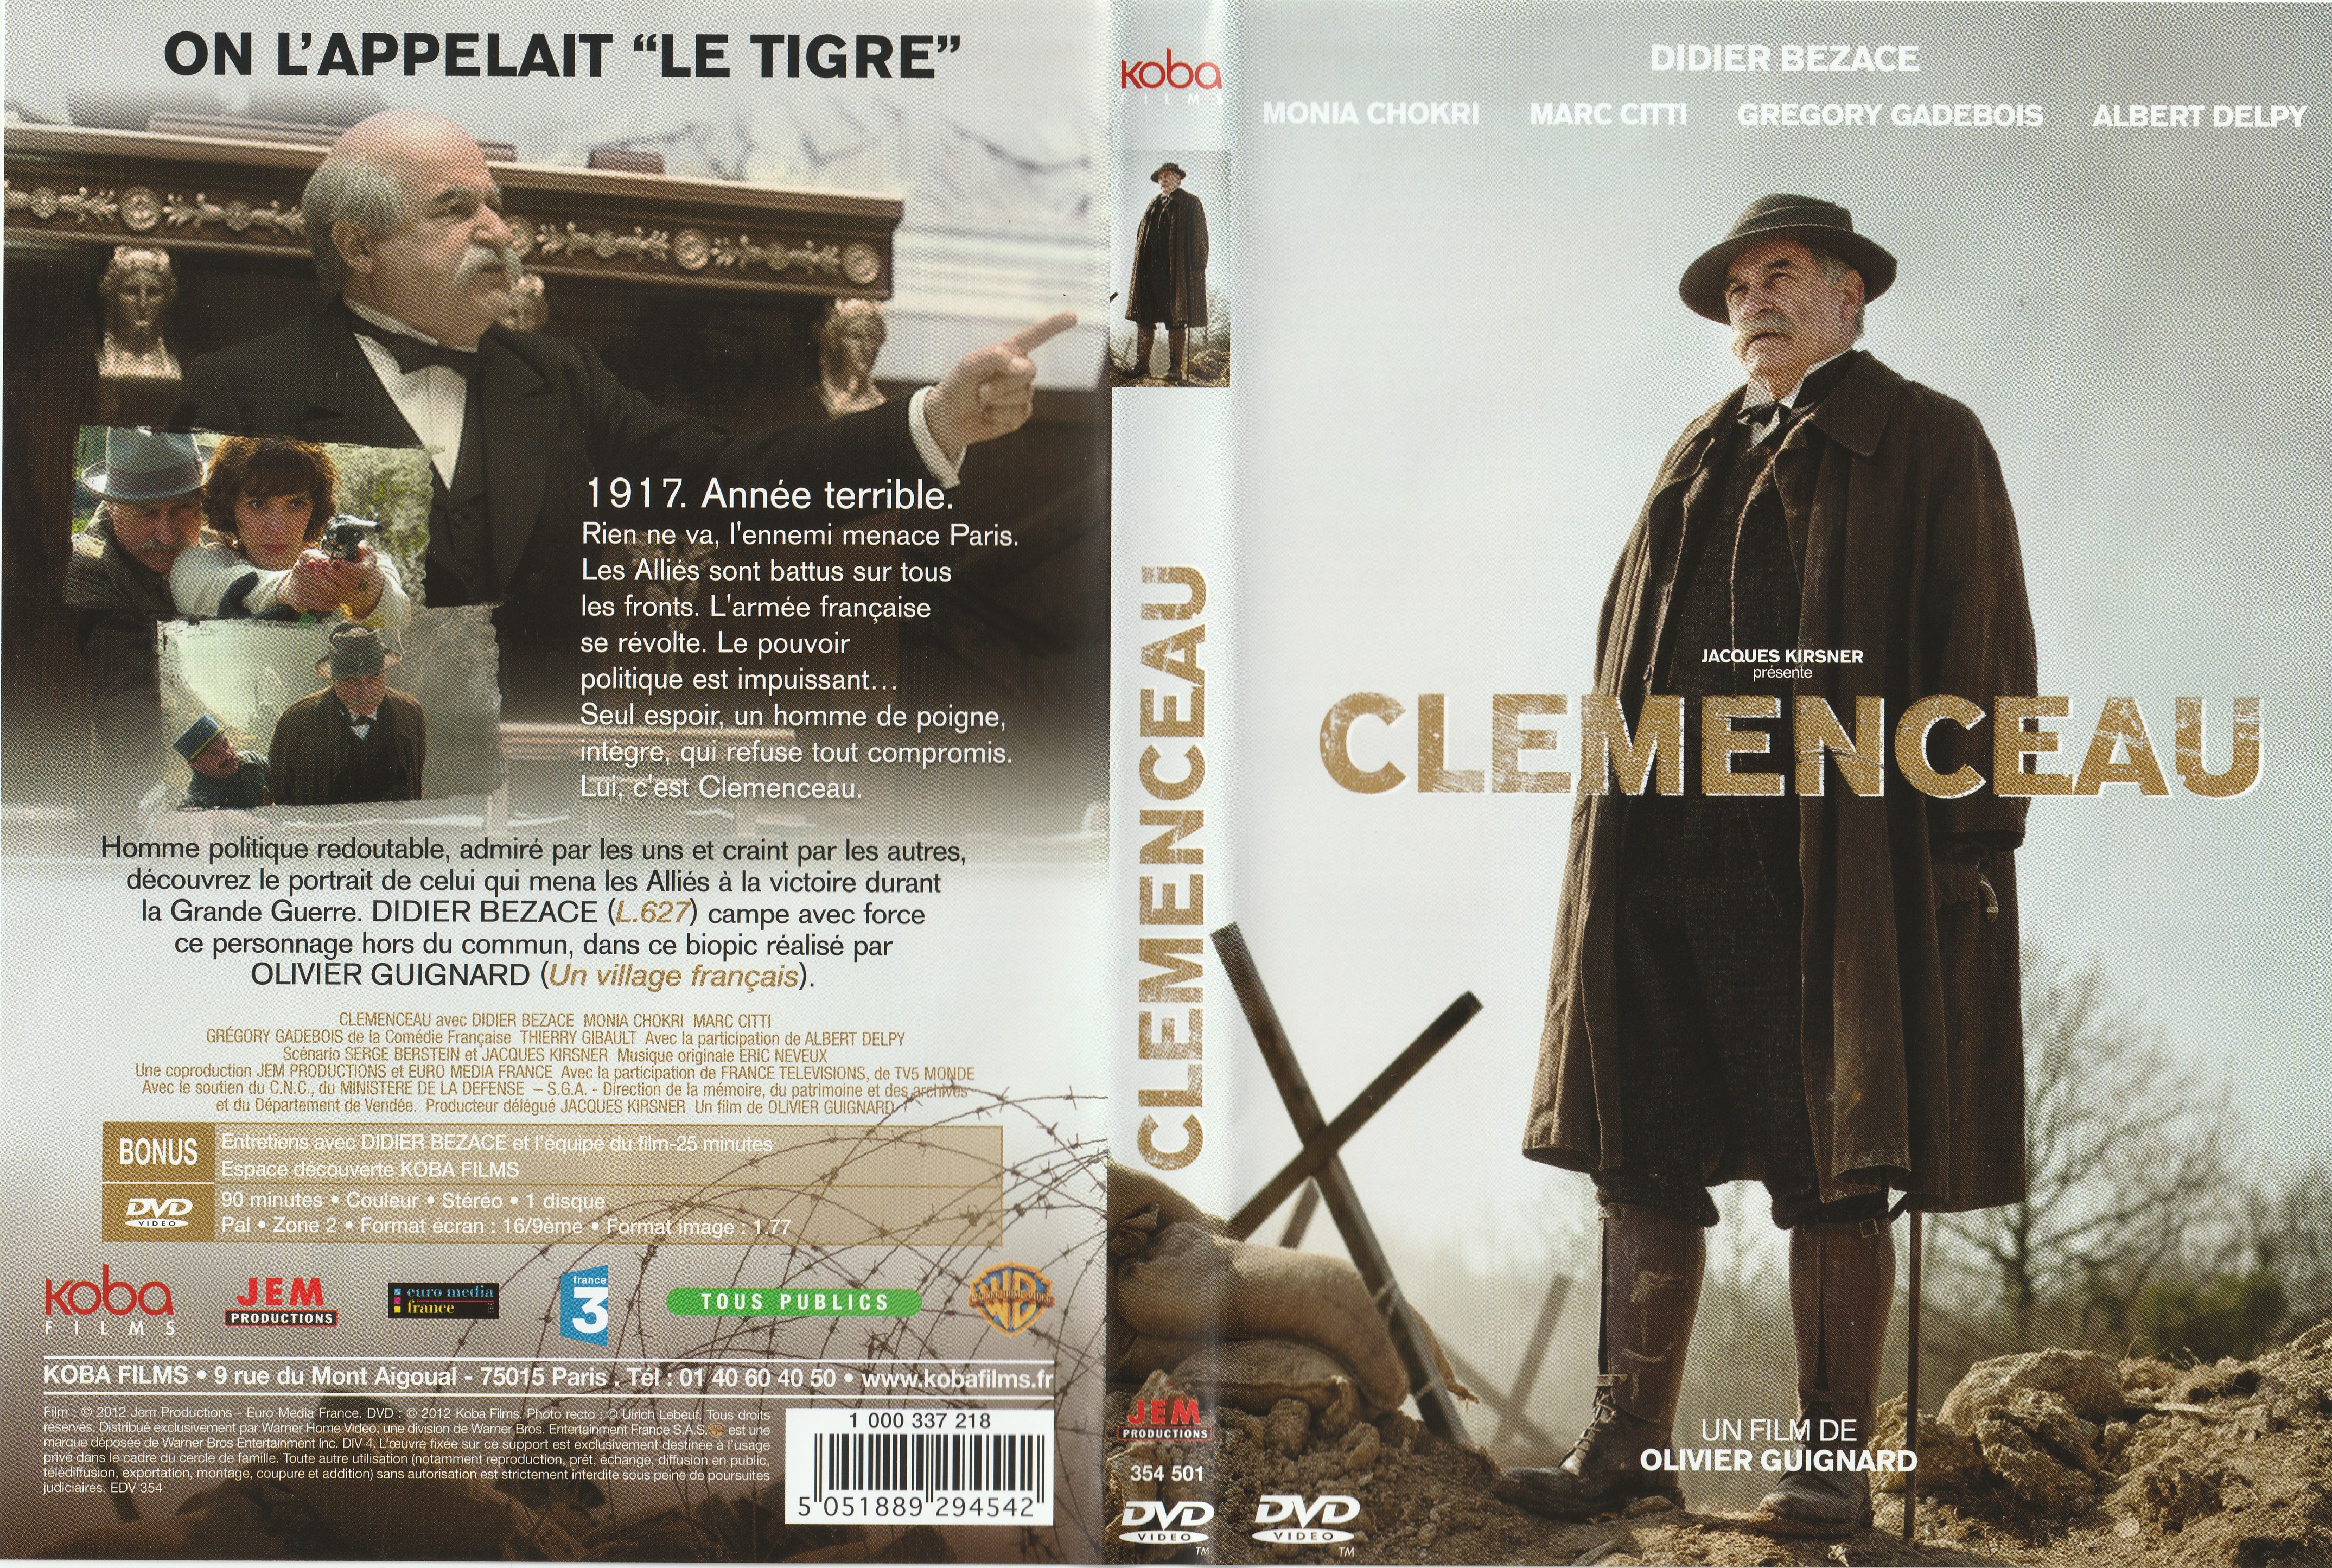 Jaquette DVD Clemenceau guignard